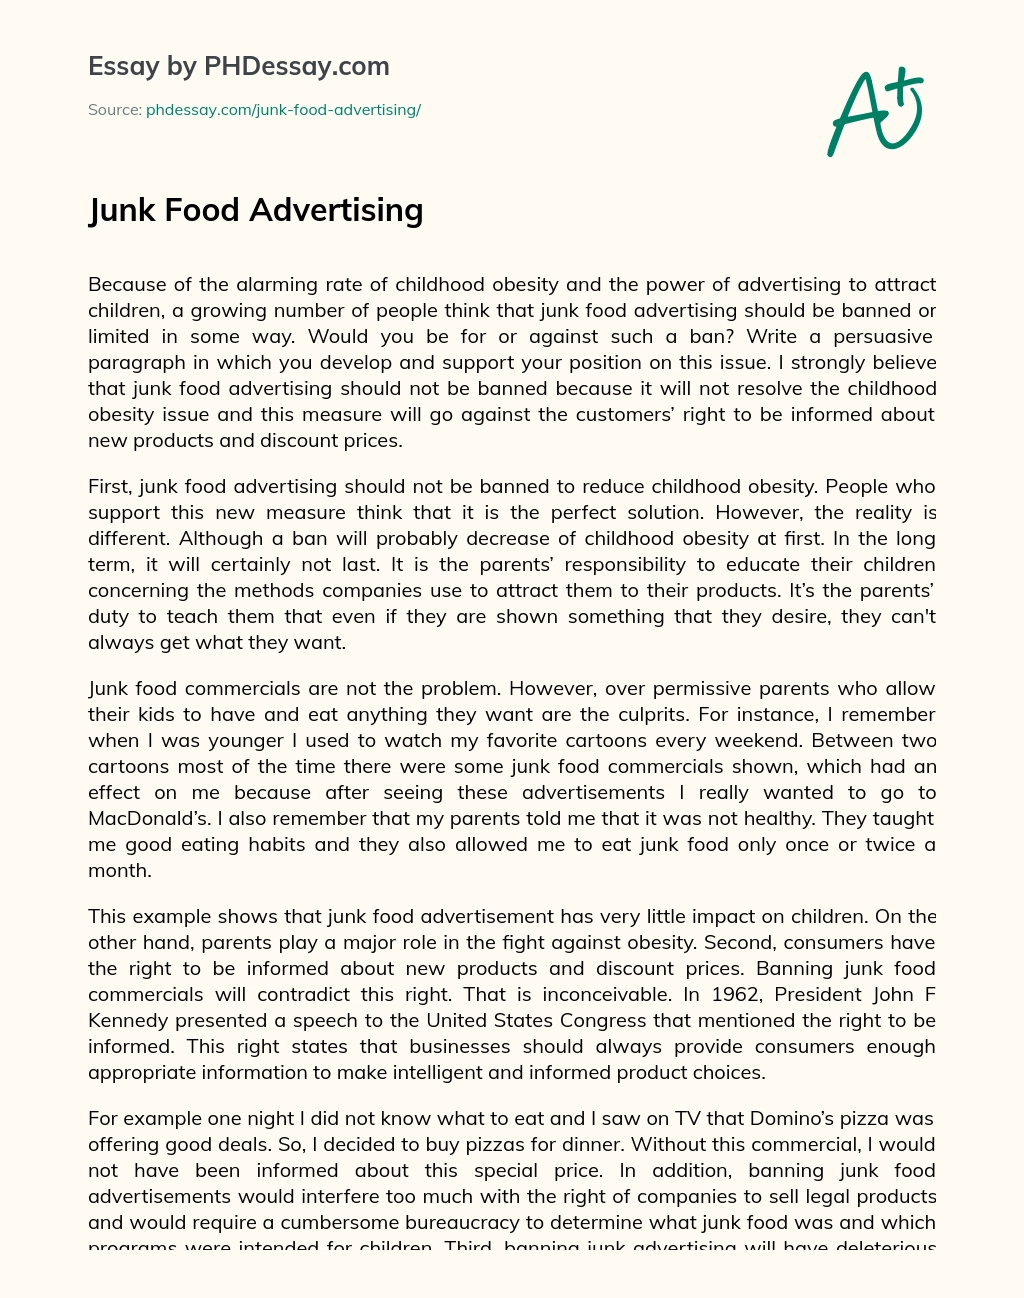 Junk Food Advertising essay